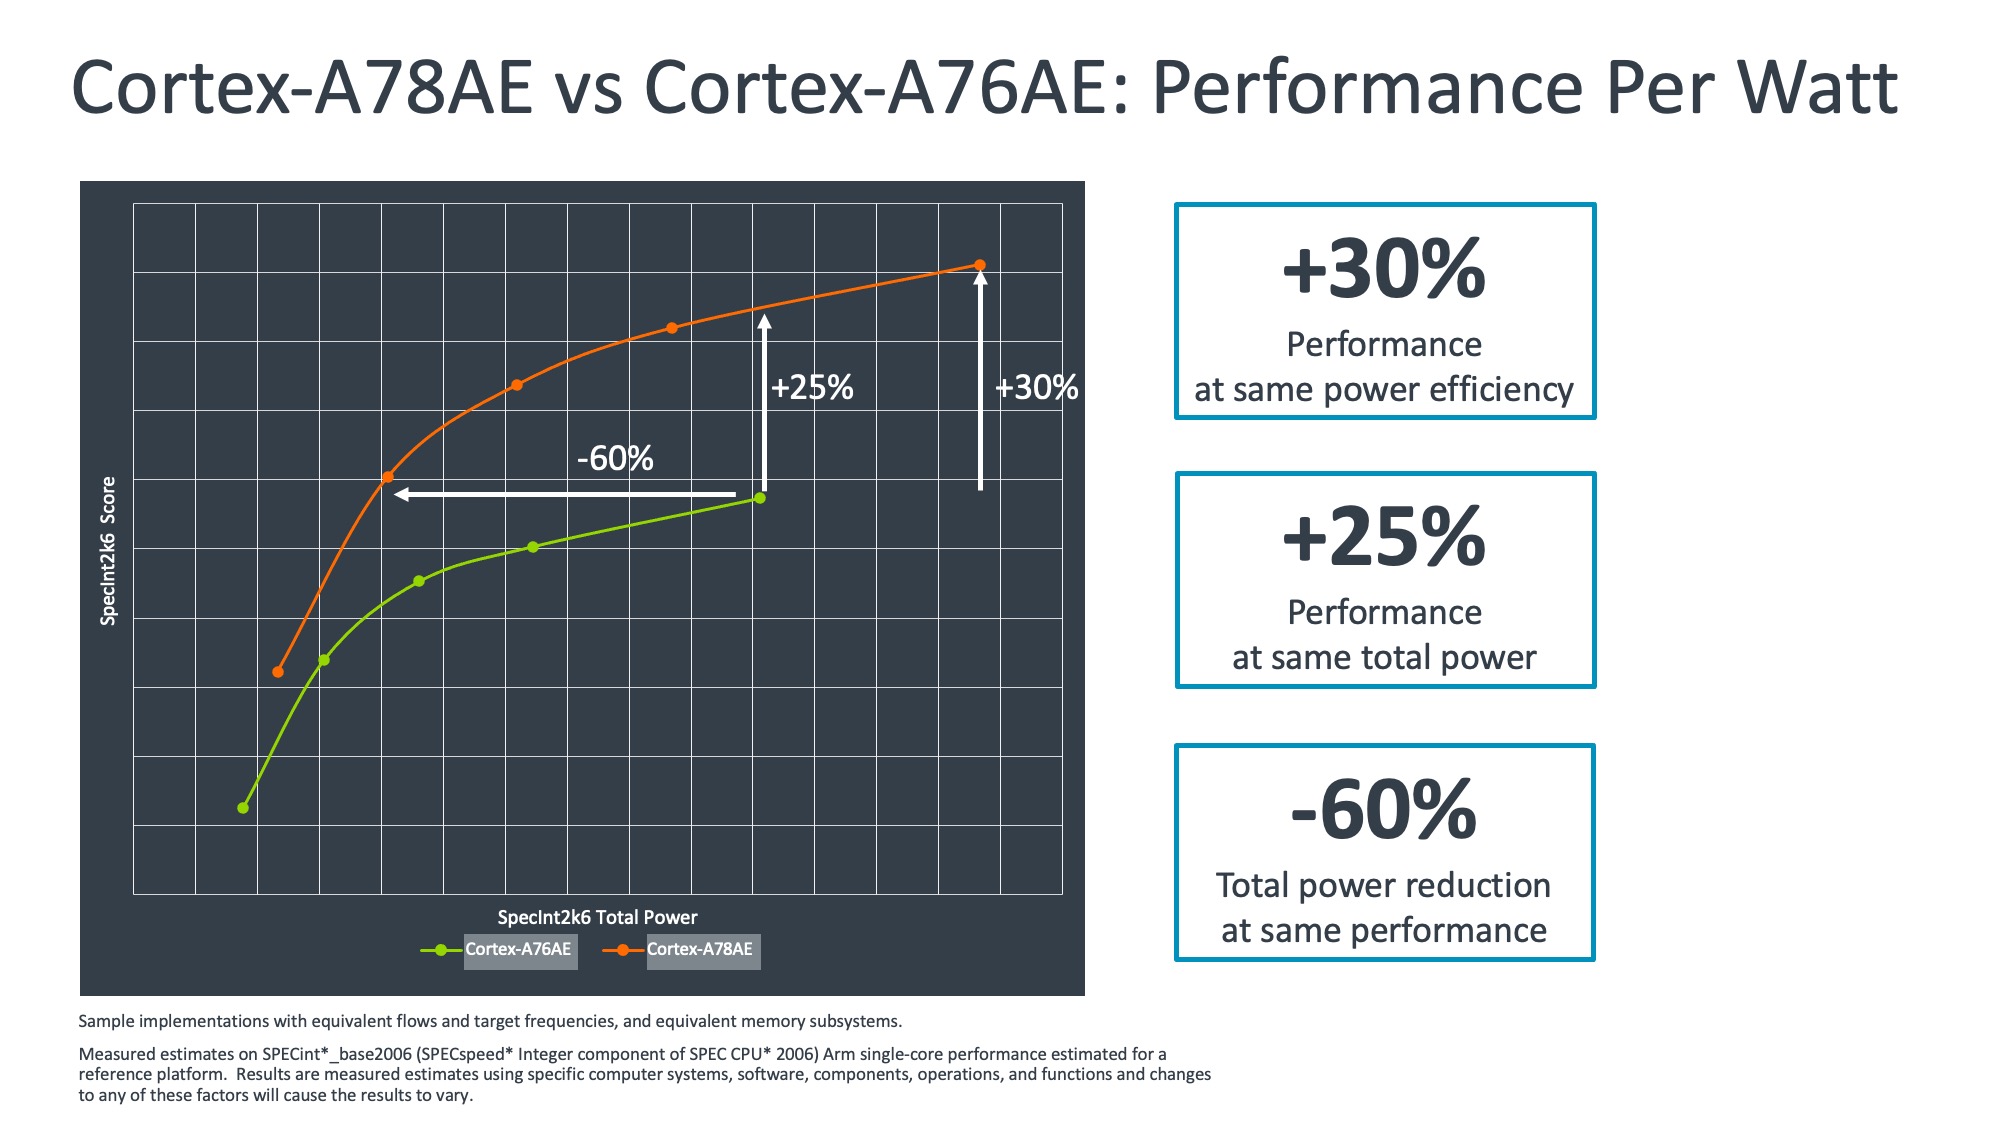 8535.Cortex-A78AE vs Cortex-A76AE Performance Per Watt.jpeg